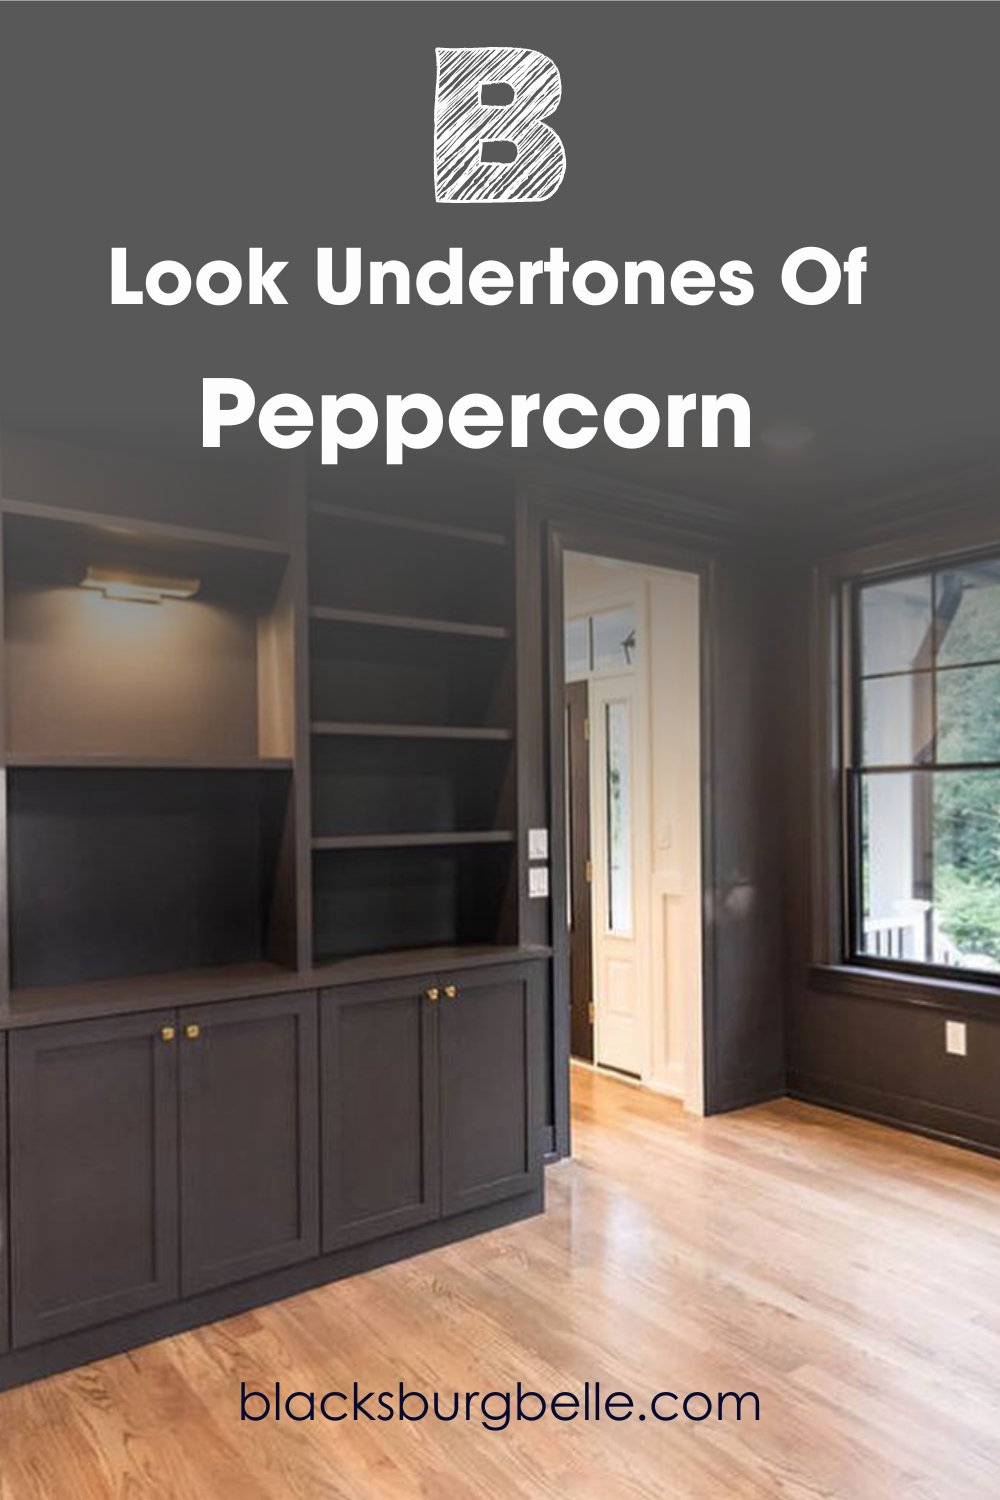 A Closer Look at the Undertones of Peppercorn